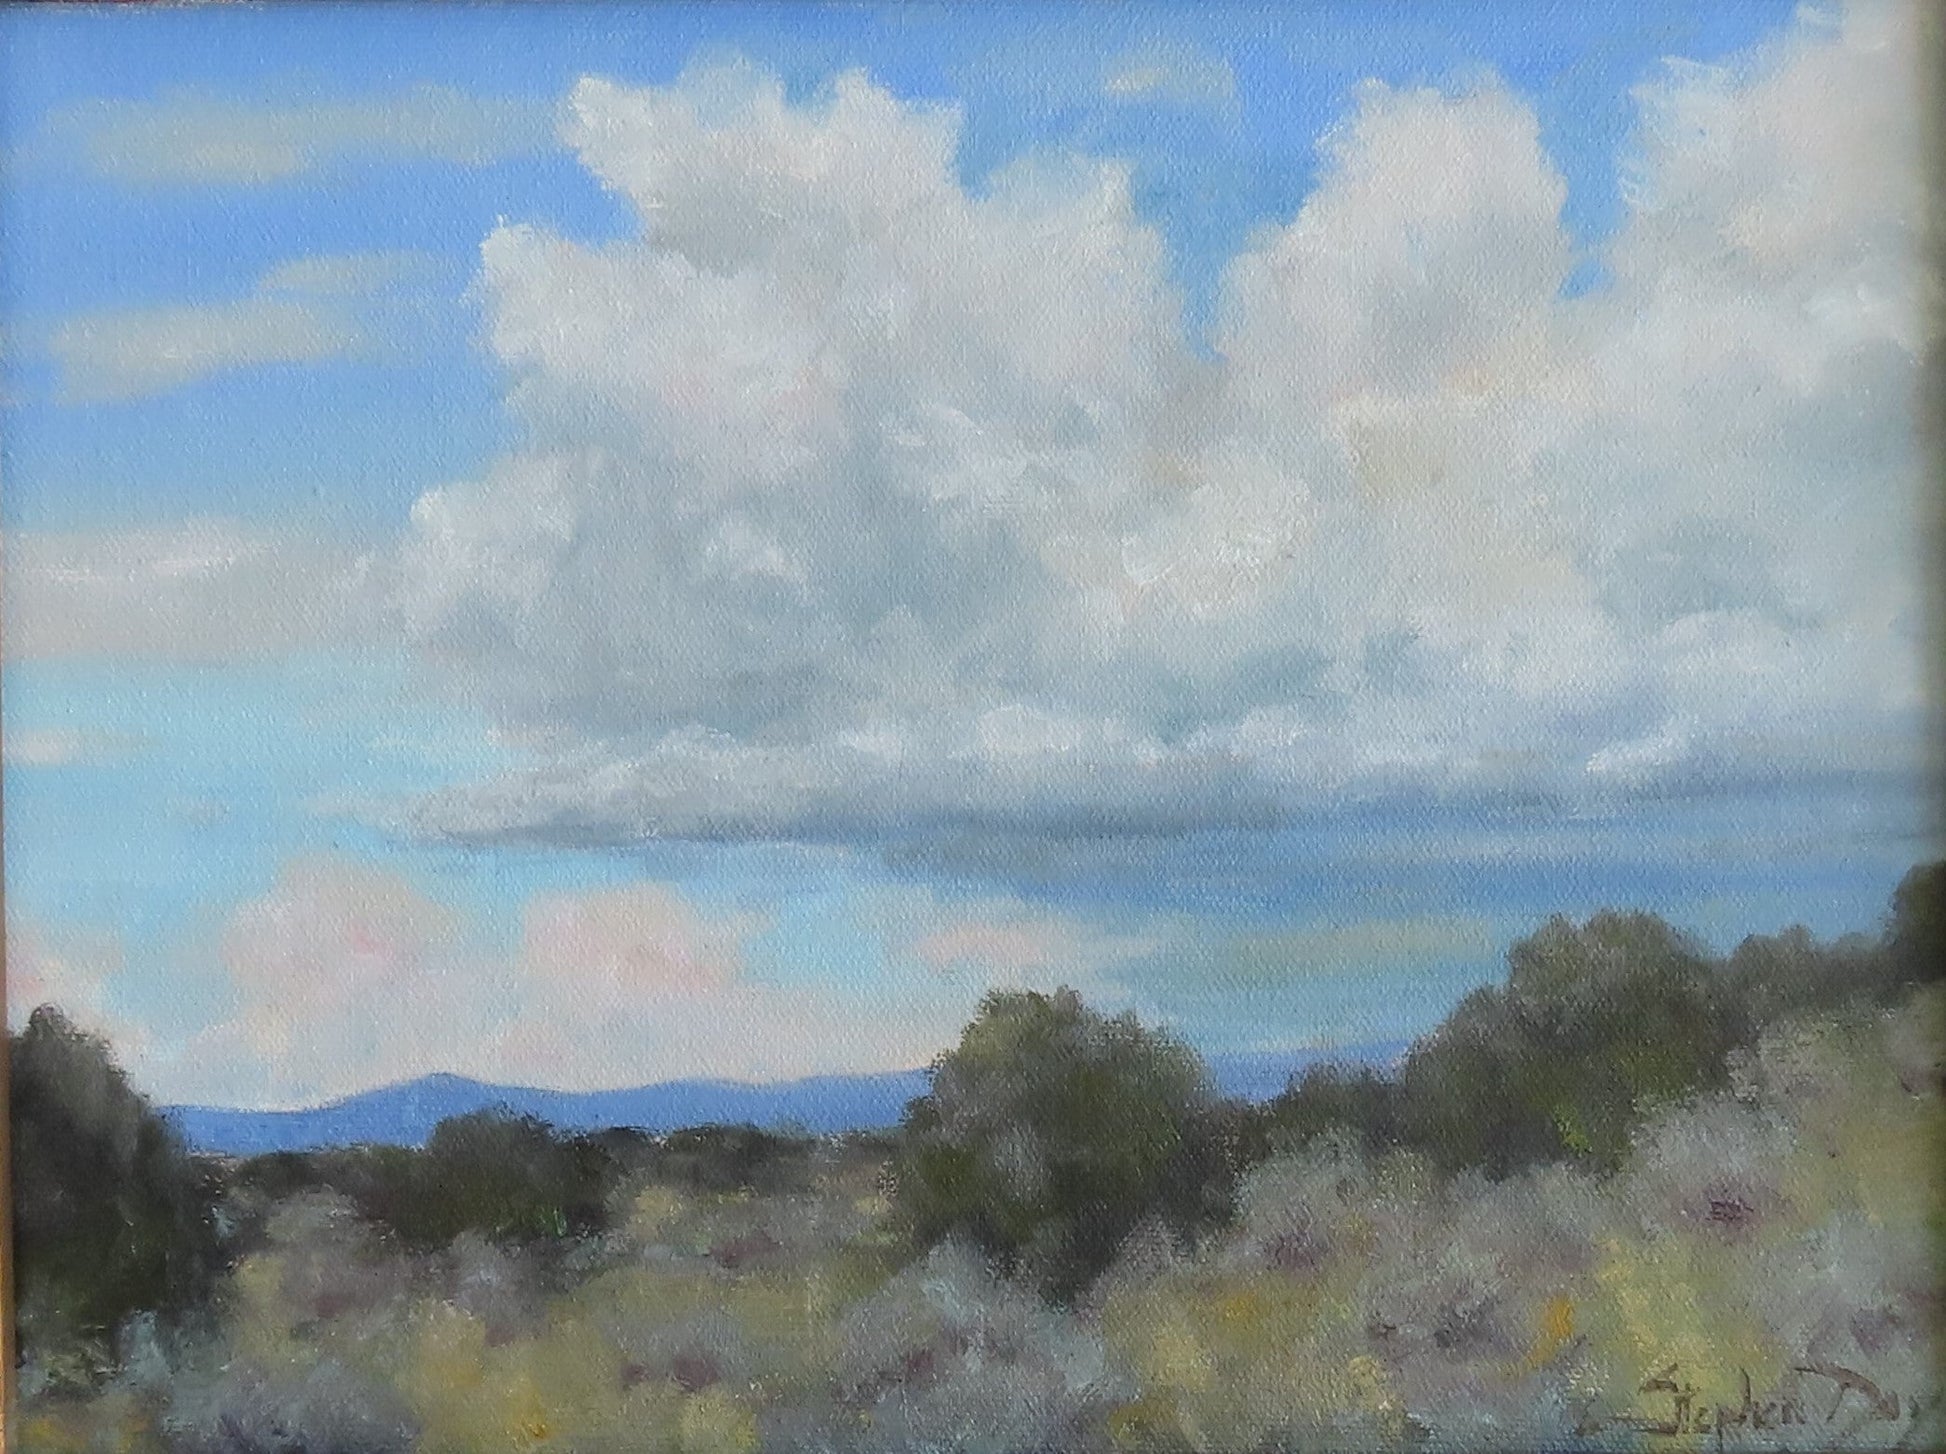 Big Monsoon Sky-painting-Stephen Day-Sorrel Sky Gallery